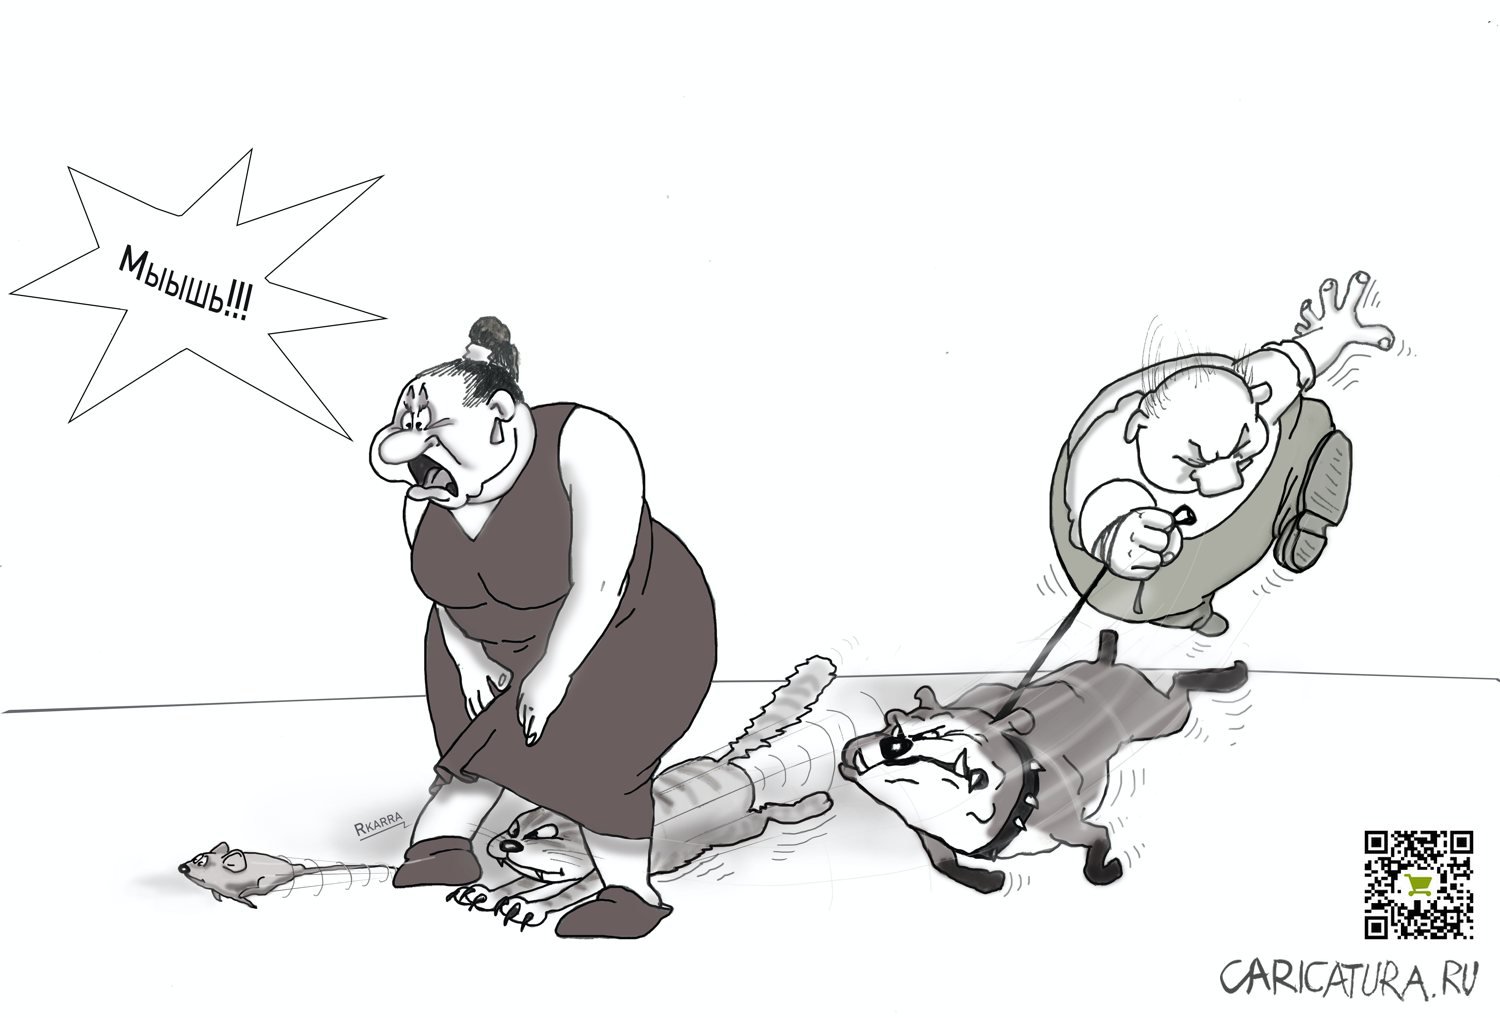 Карикатура "Мышь", Раф Карин